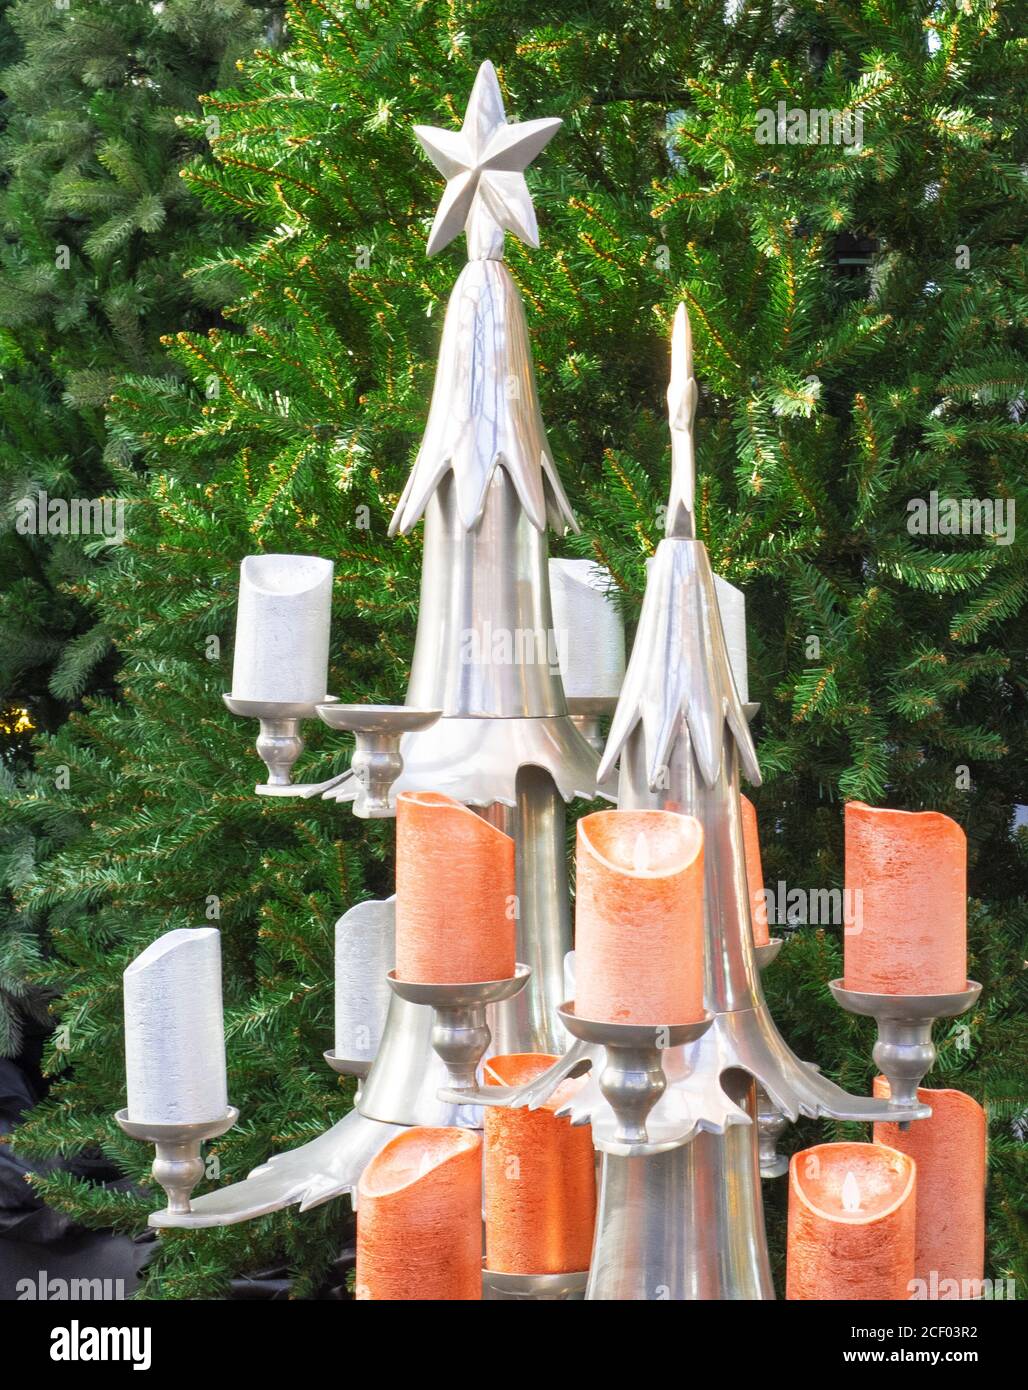 décor festif avec bougies colorées sur un arbre de noël Banque D'Images